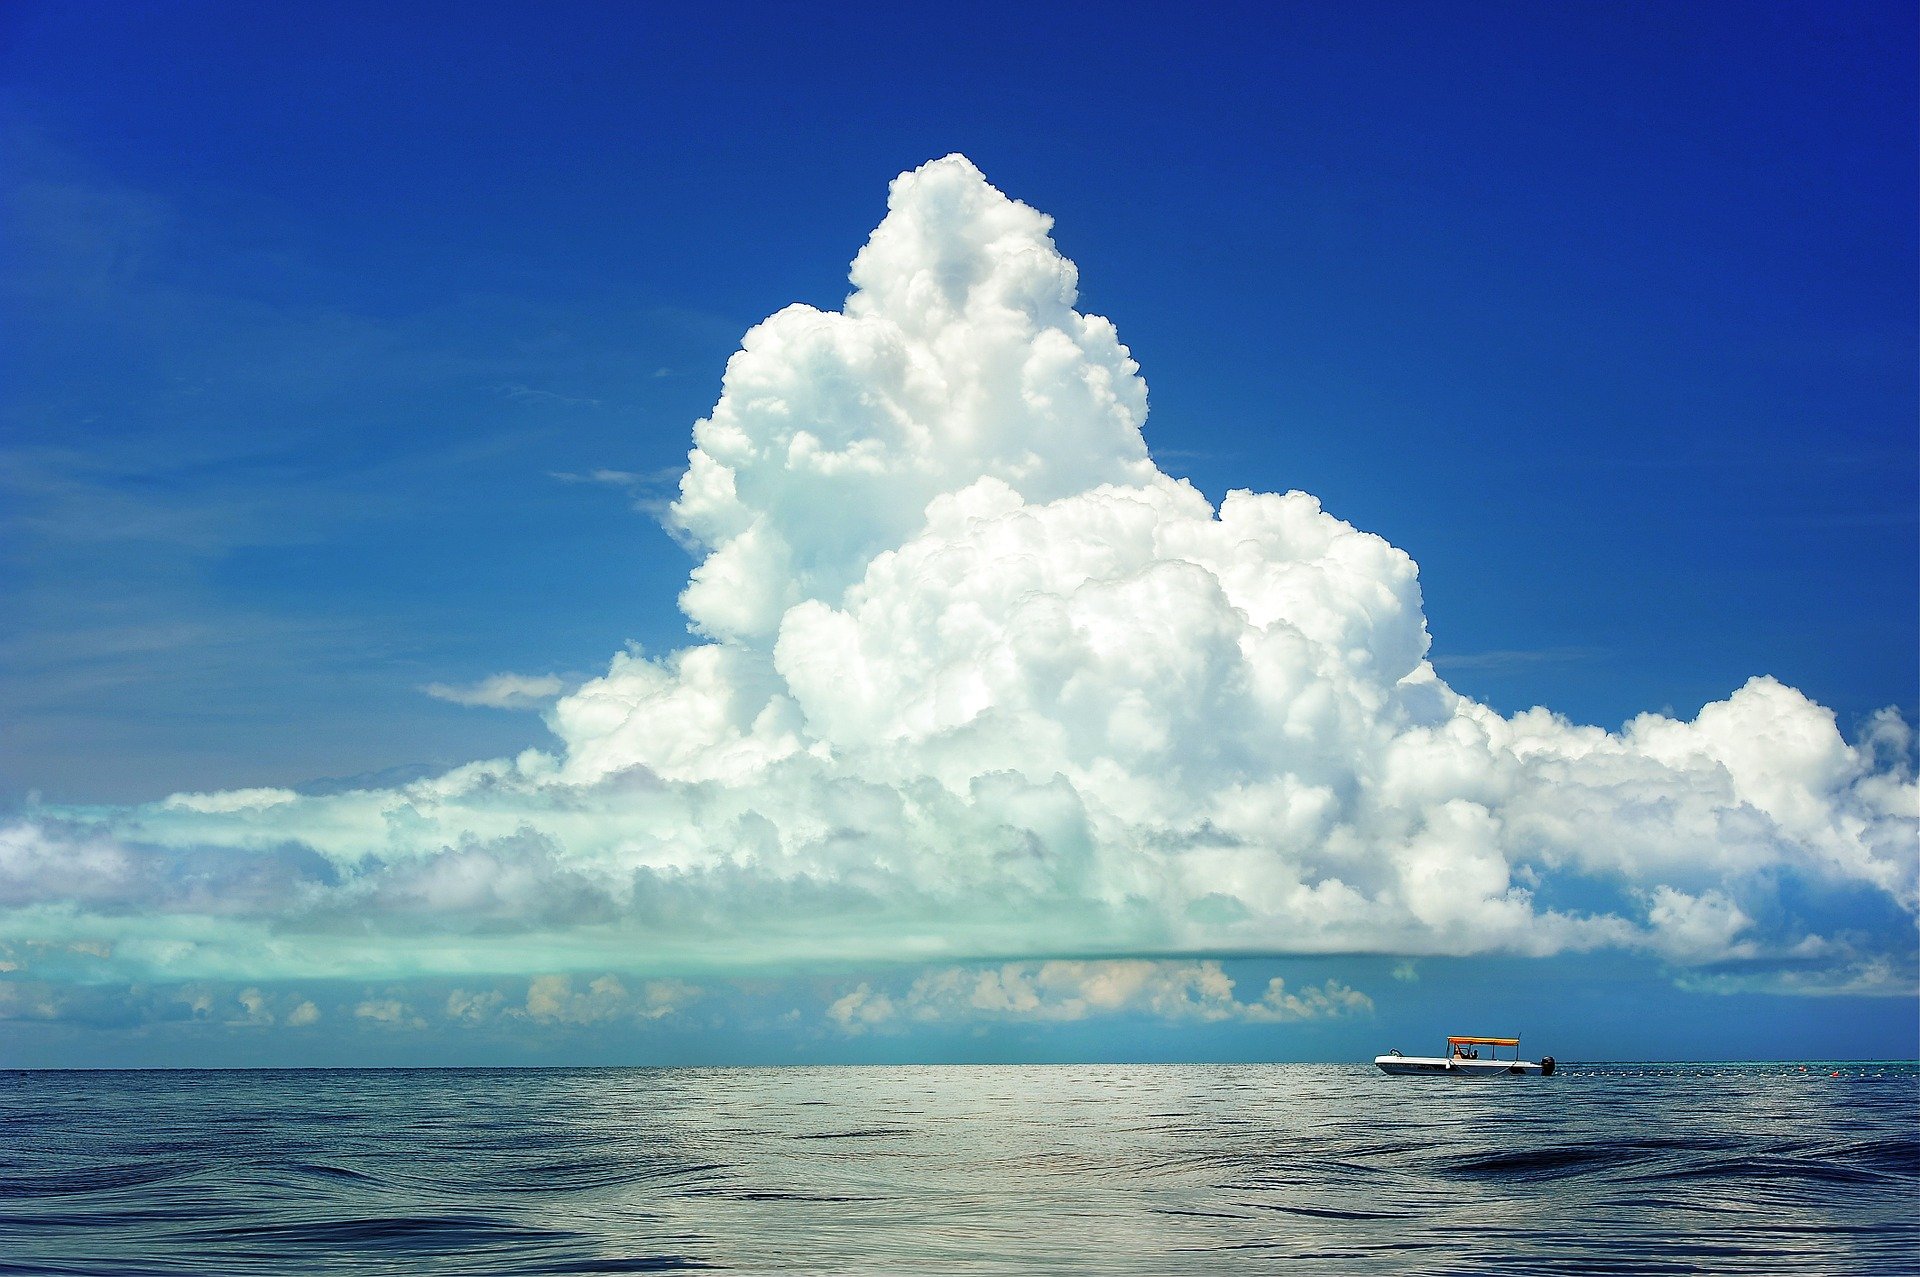 Les suies peuvent avoir un impact sur la formation des nuages et donc sur le climat. Crédits : PublicDomainPictures par Pixabay